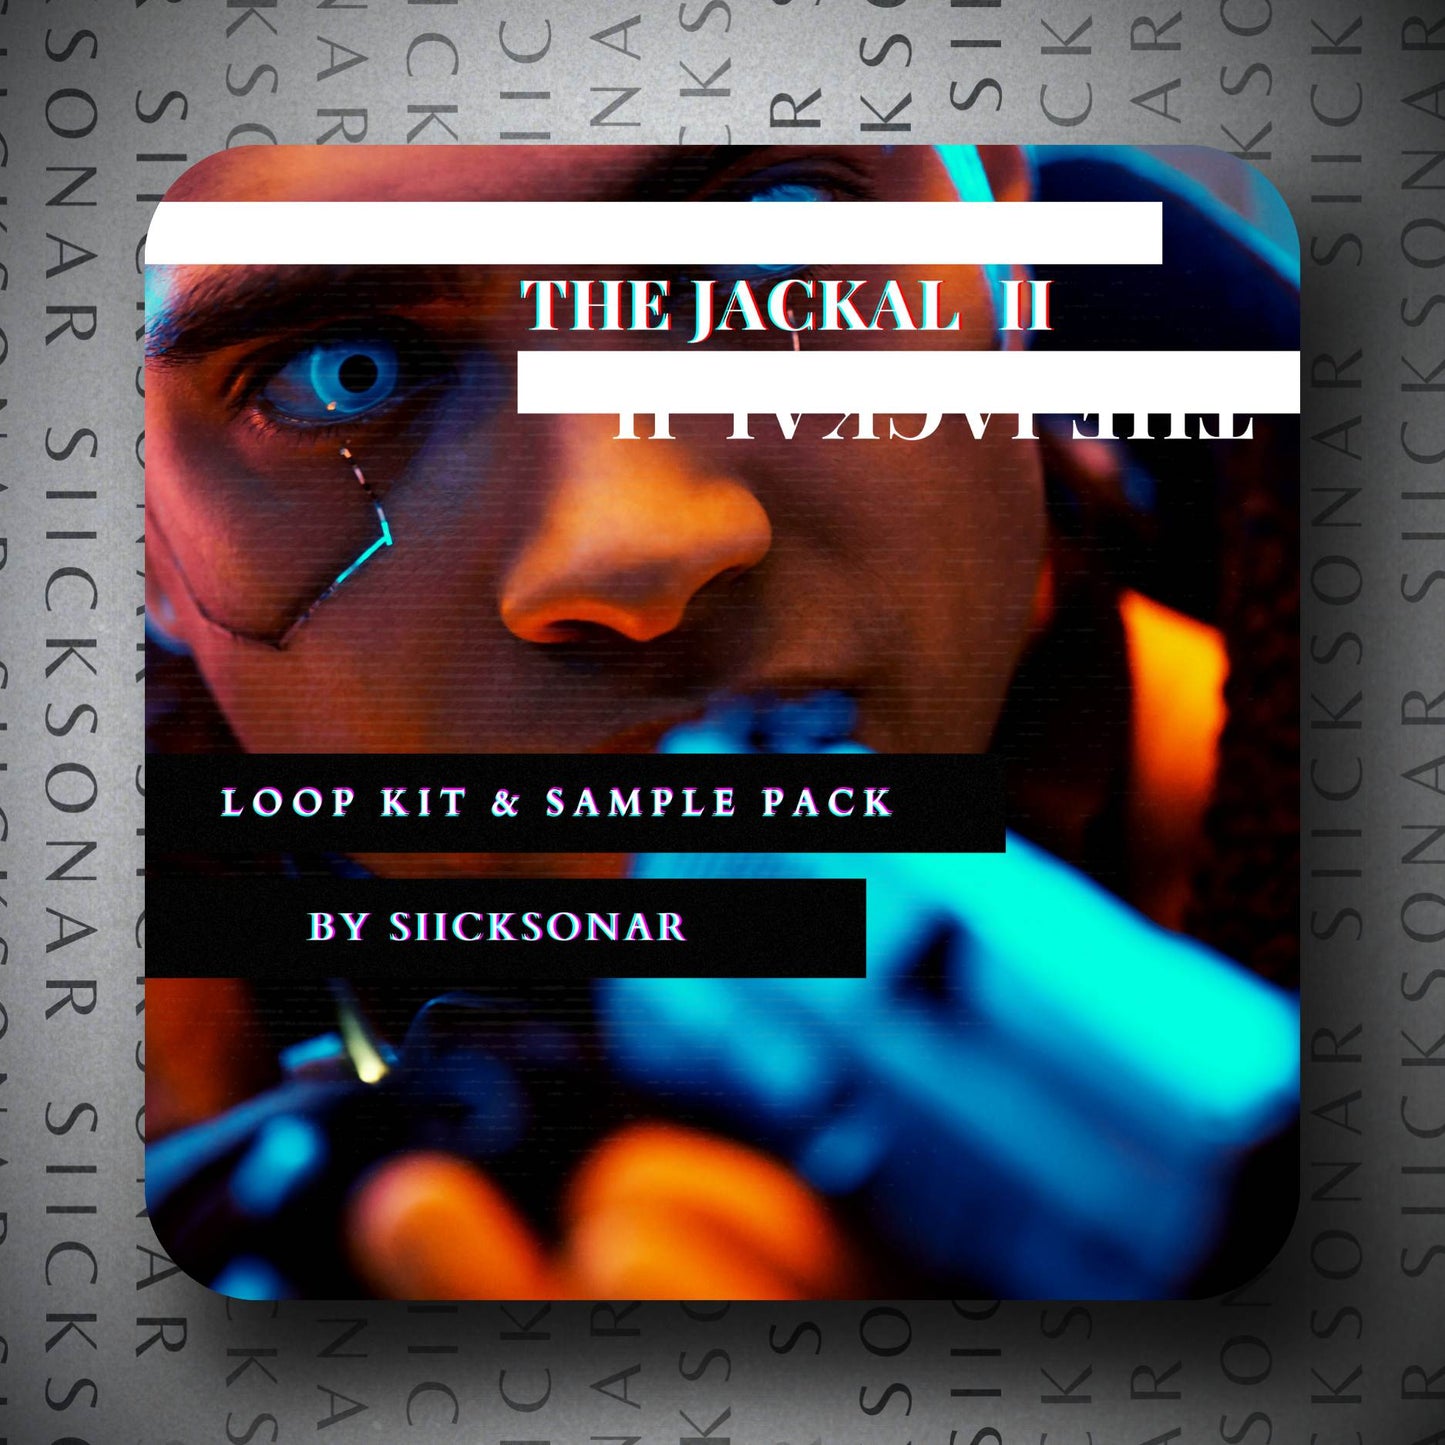 The Jackal II